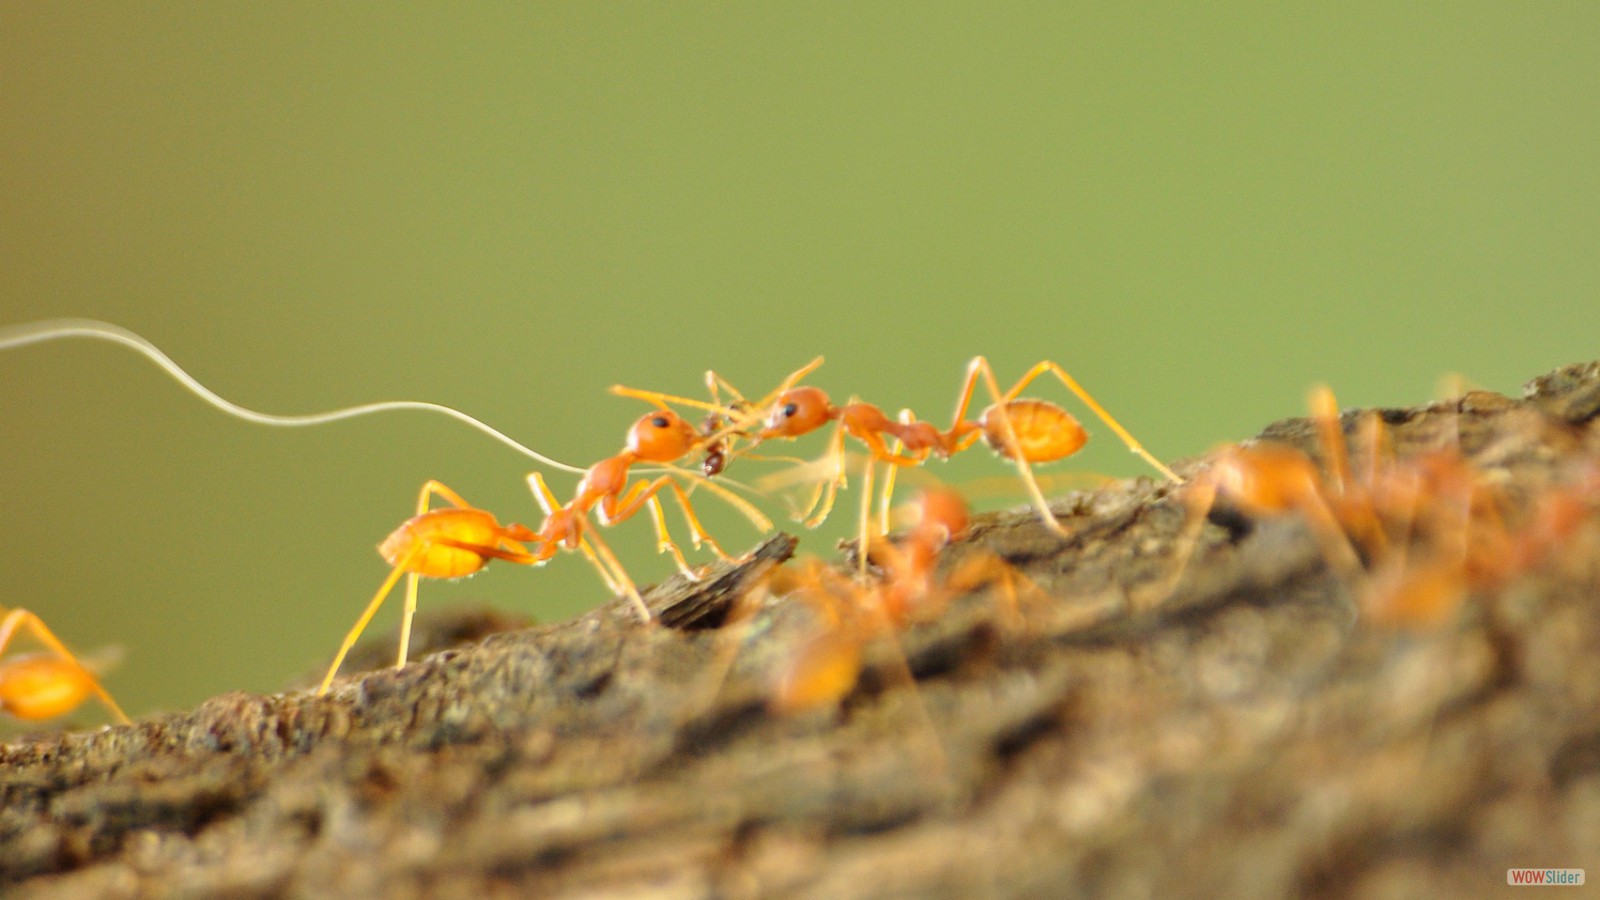 Harvester ant nest. Photo by Vishnal R